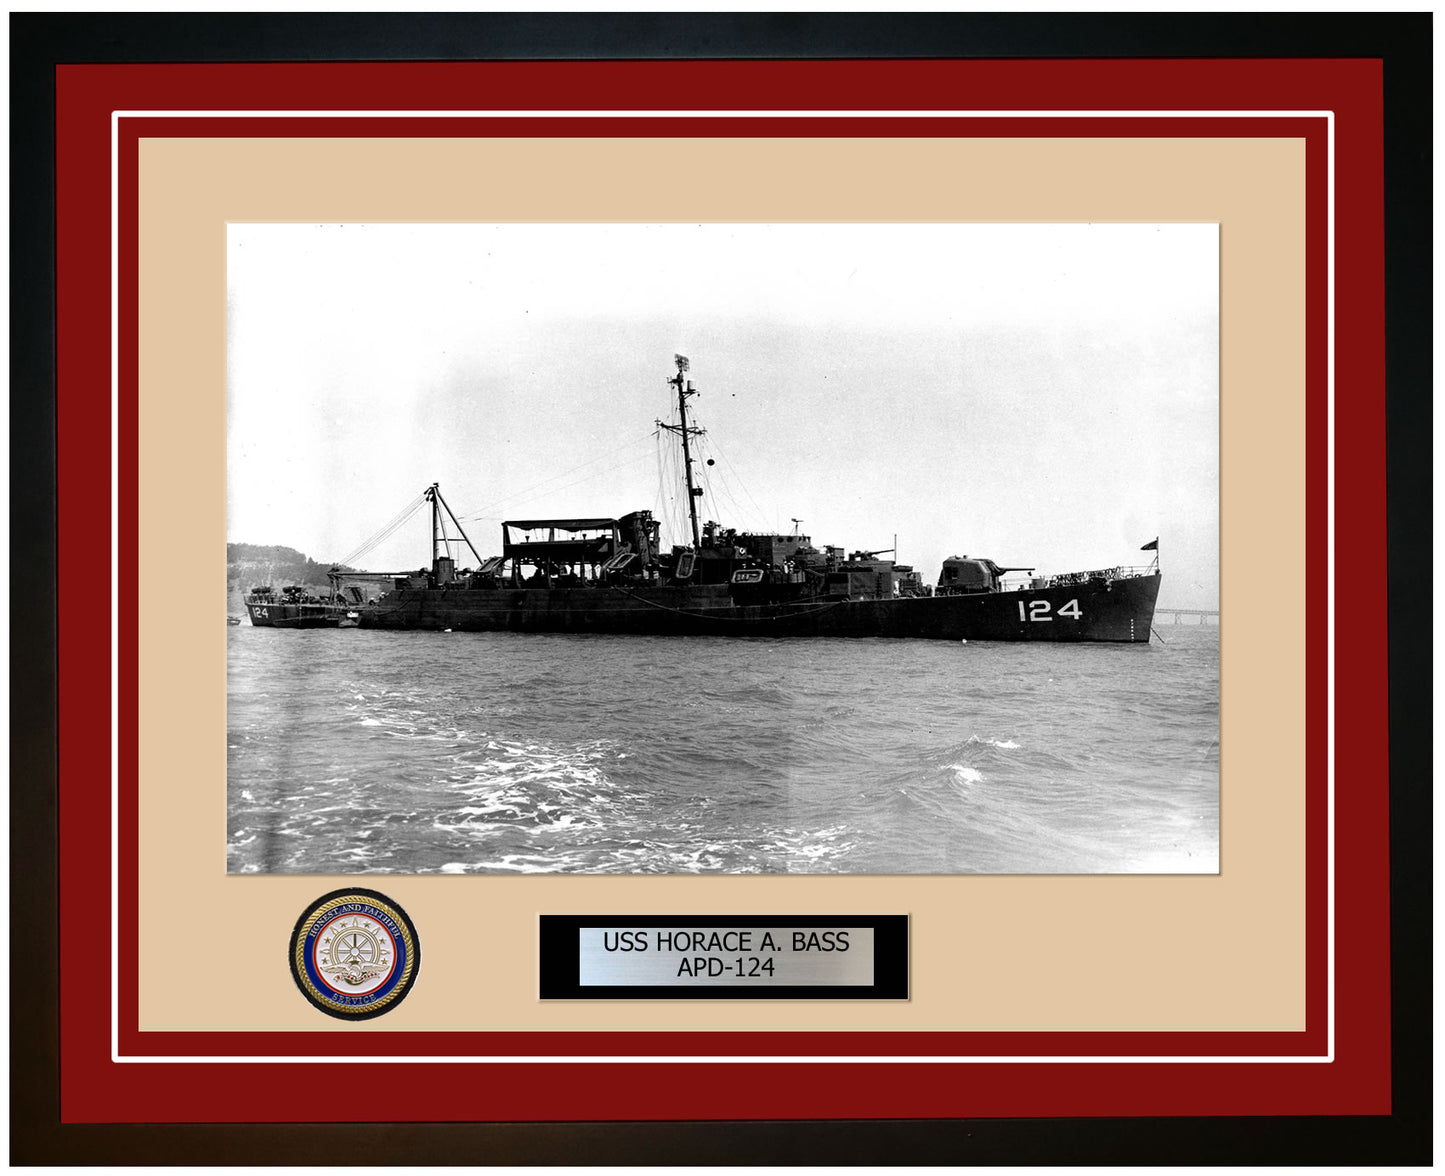 USS Horace A. Bass APD-124 Framed Navy Ship Photo Burgundy